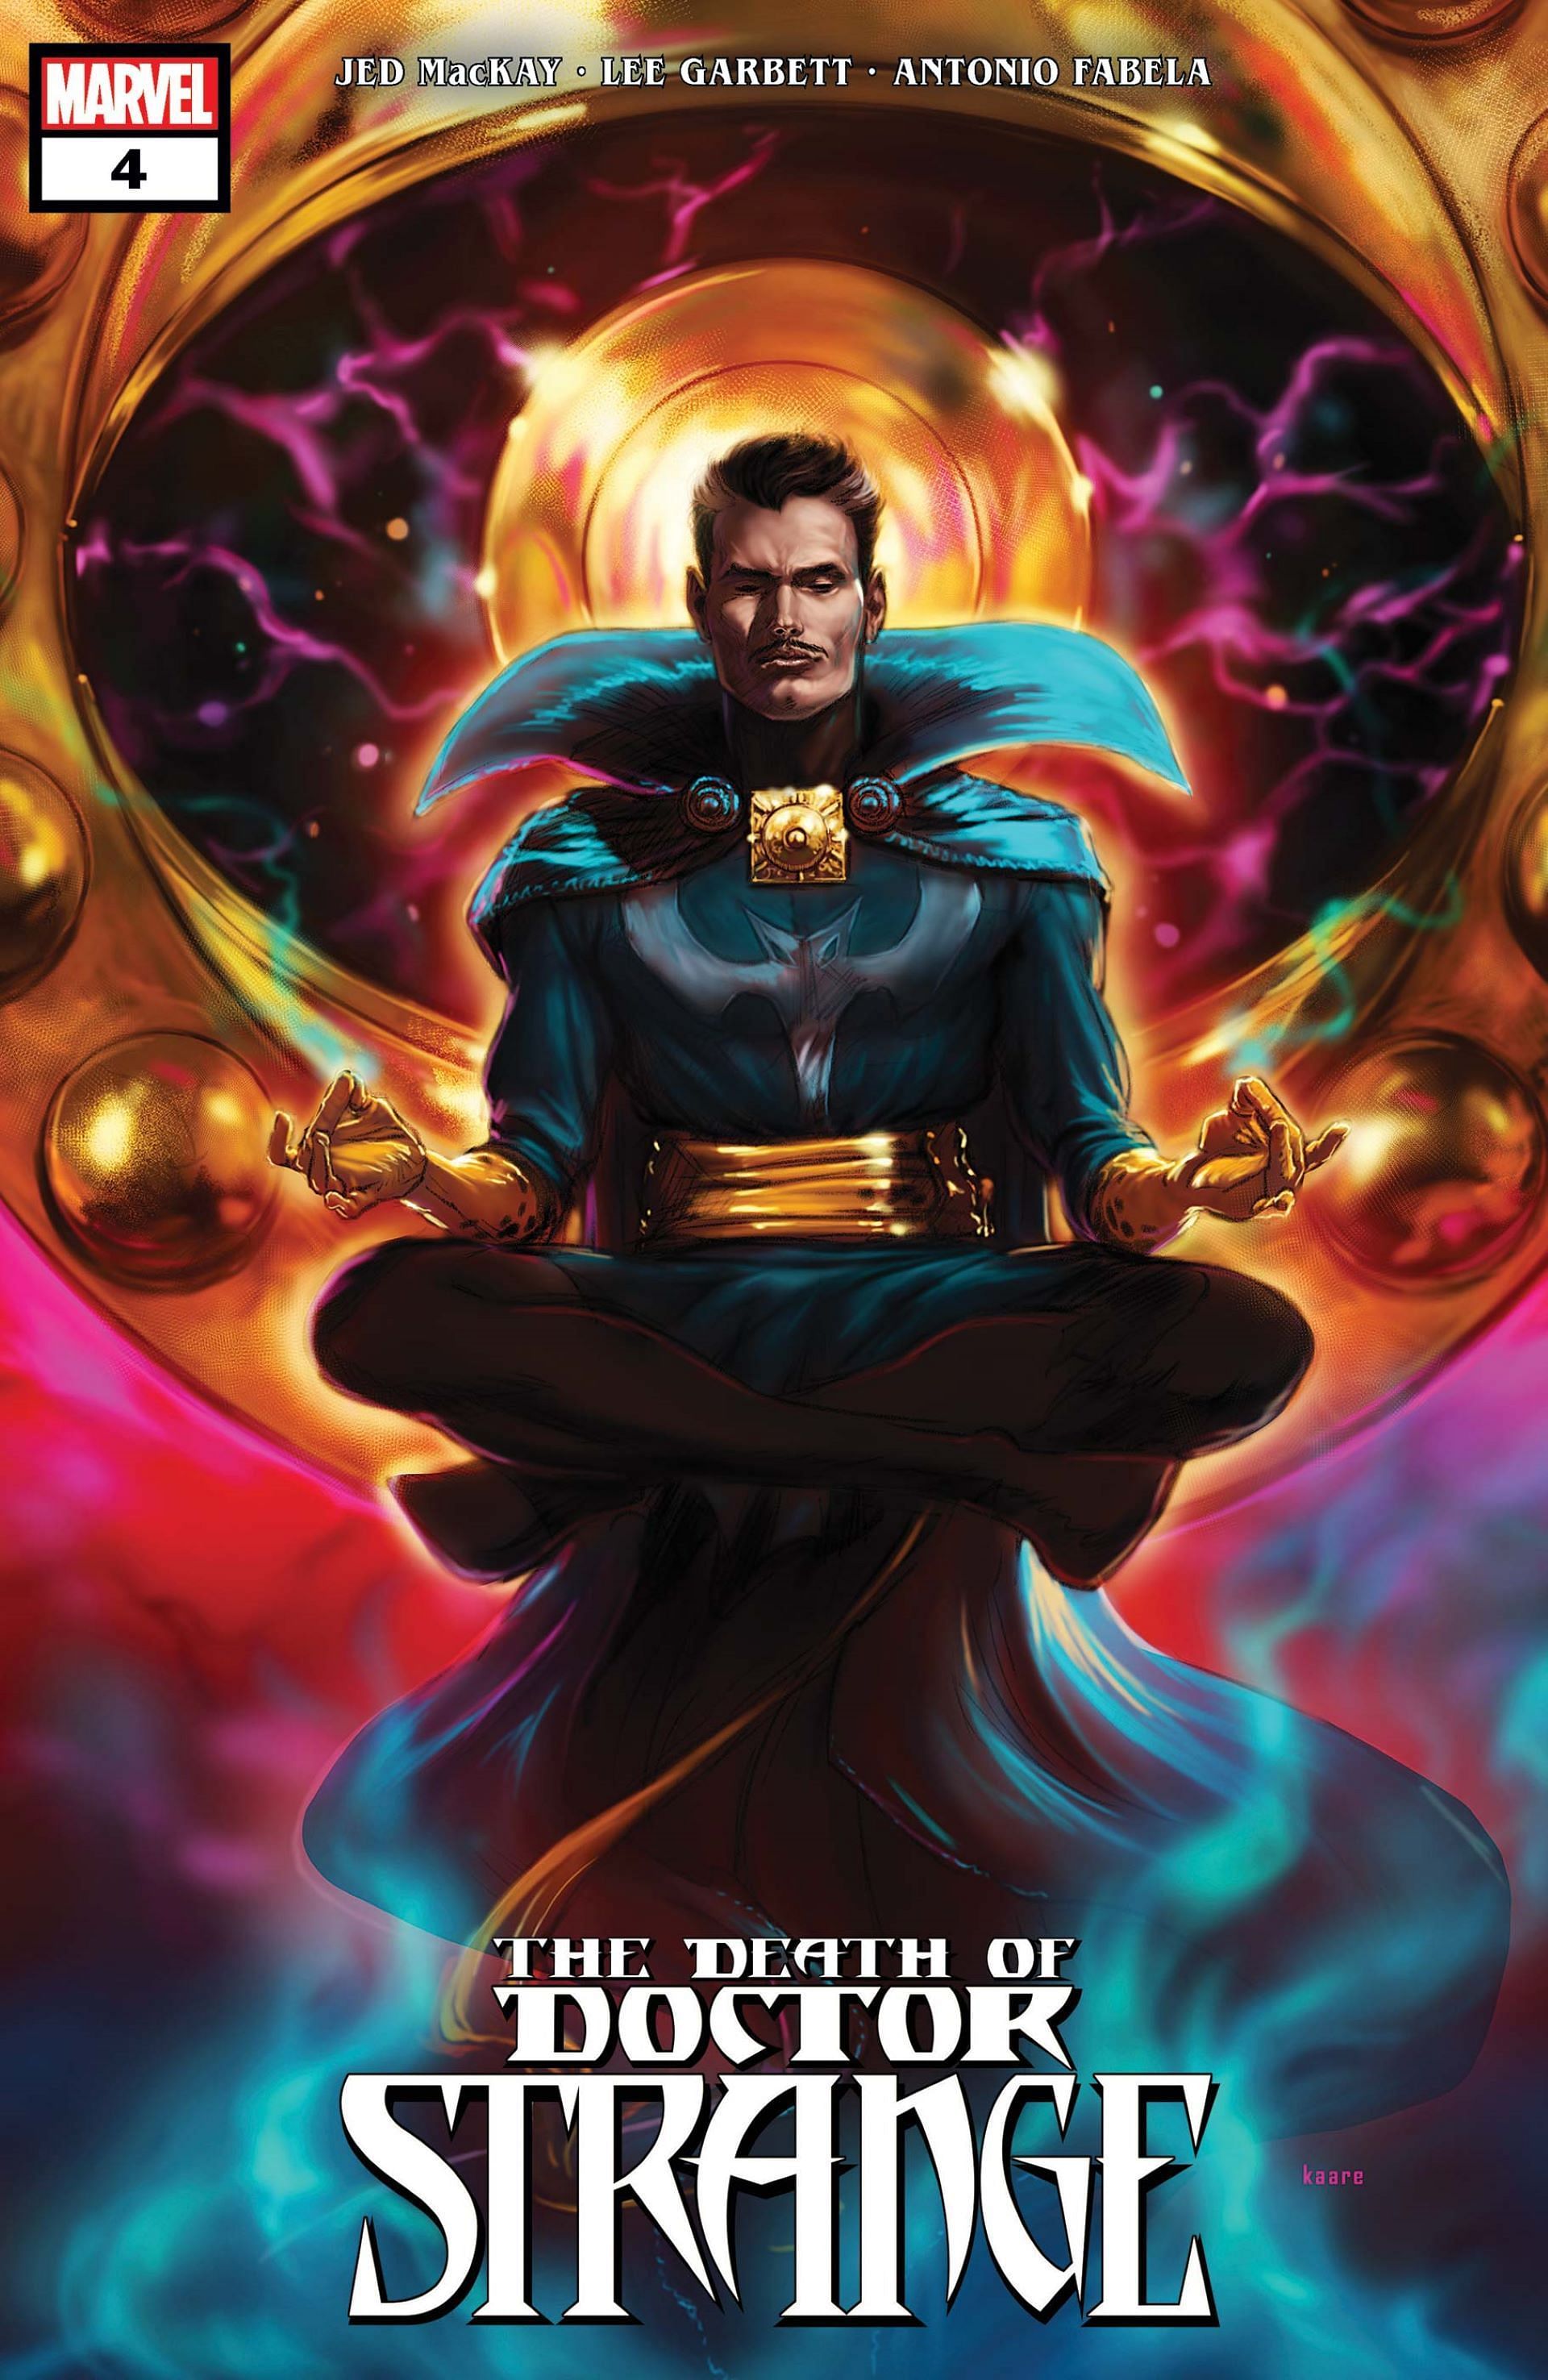 Doctor Strange #4 sees a younger version of Doctor Strange (Image via Marvel)